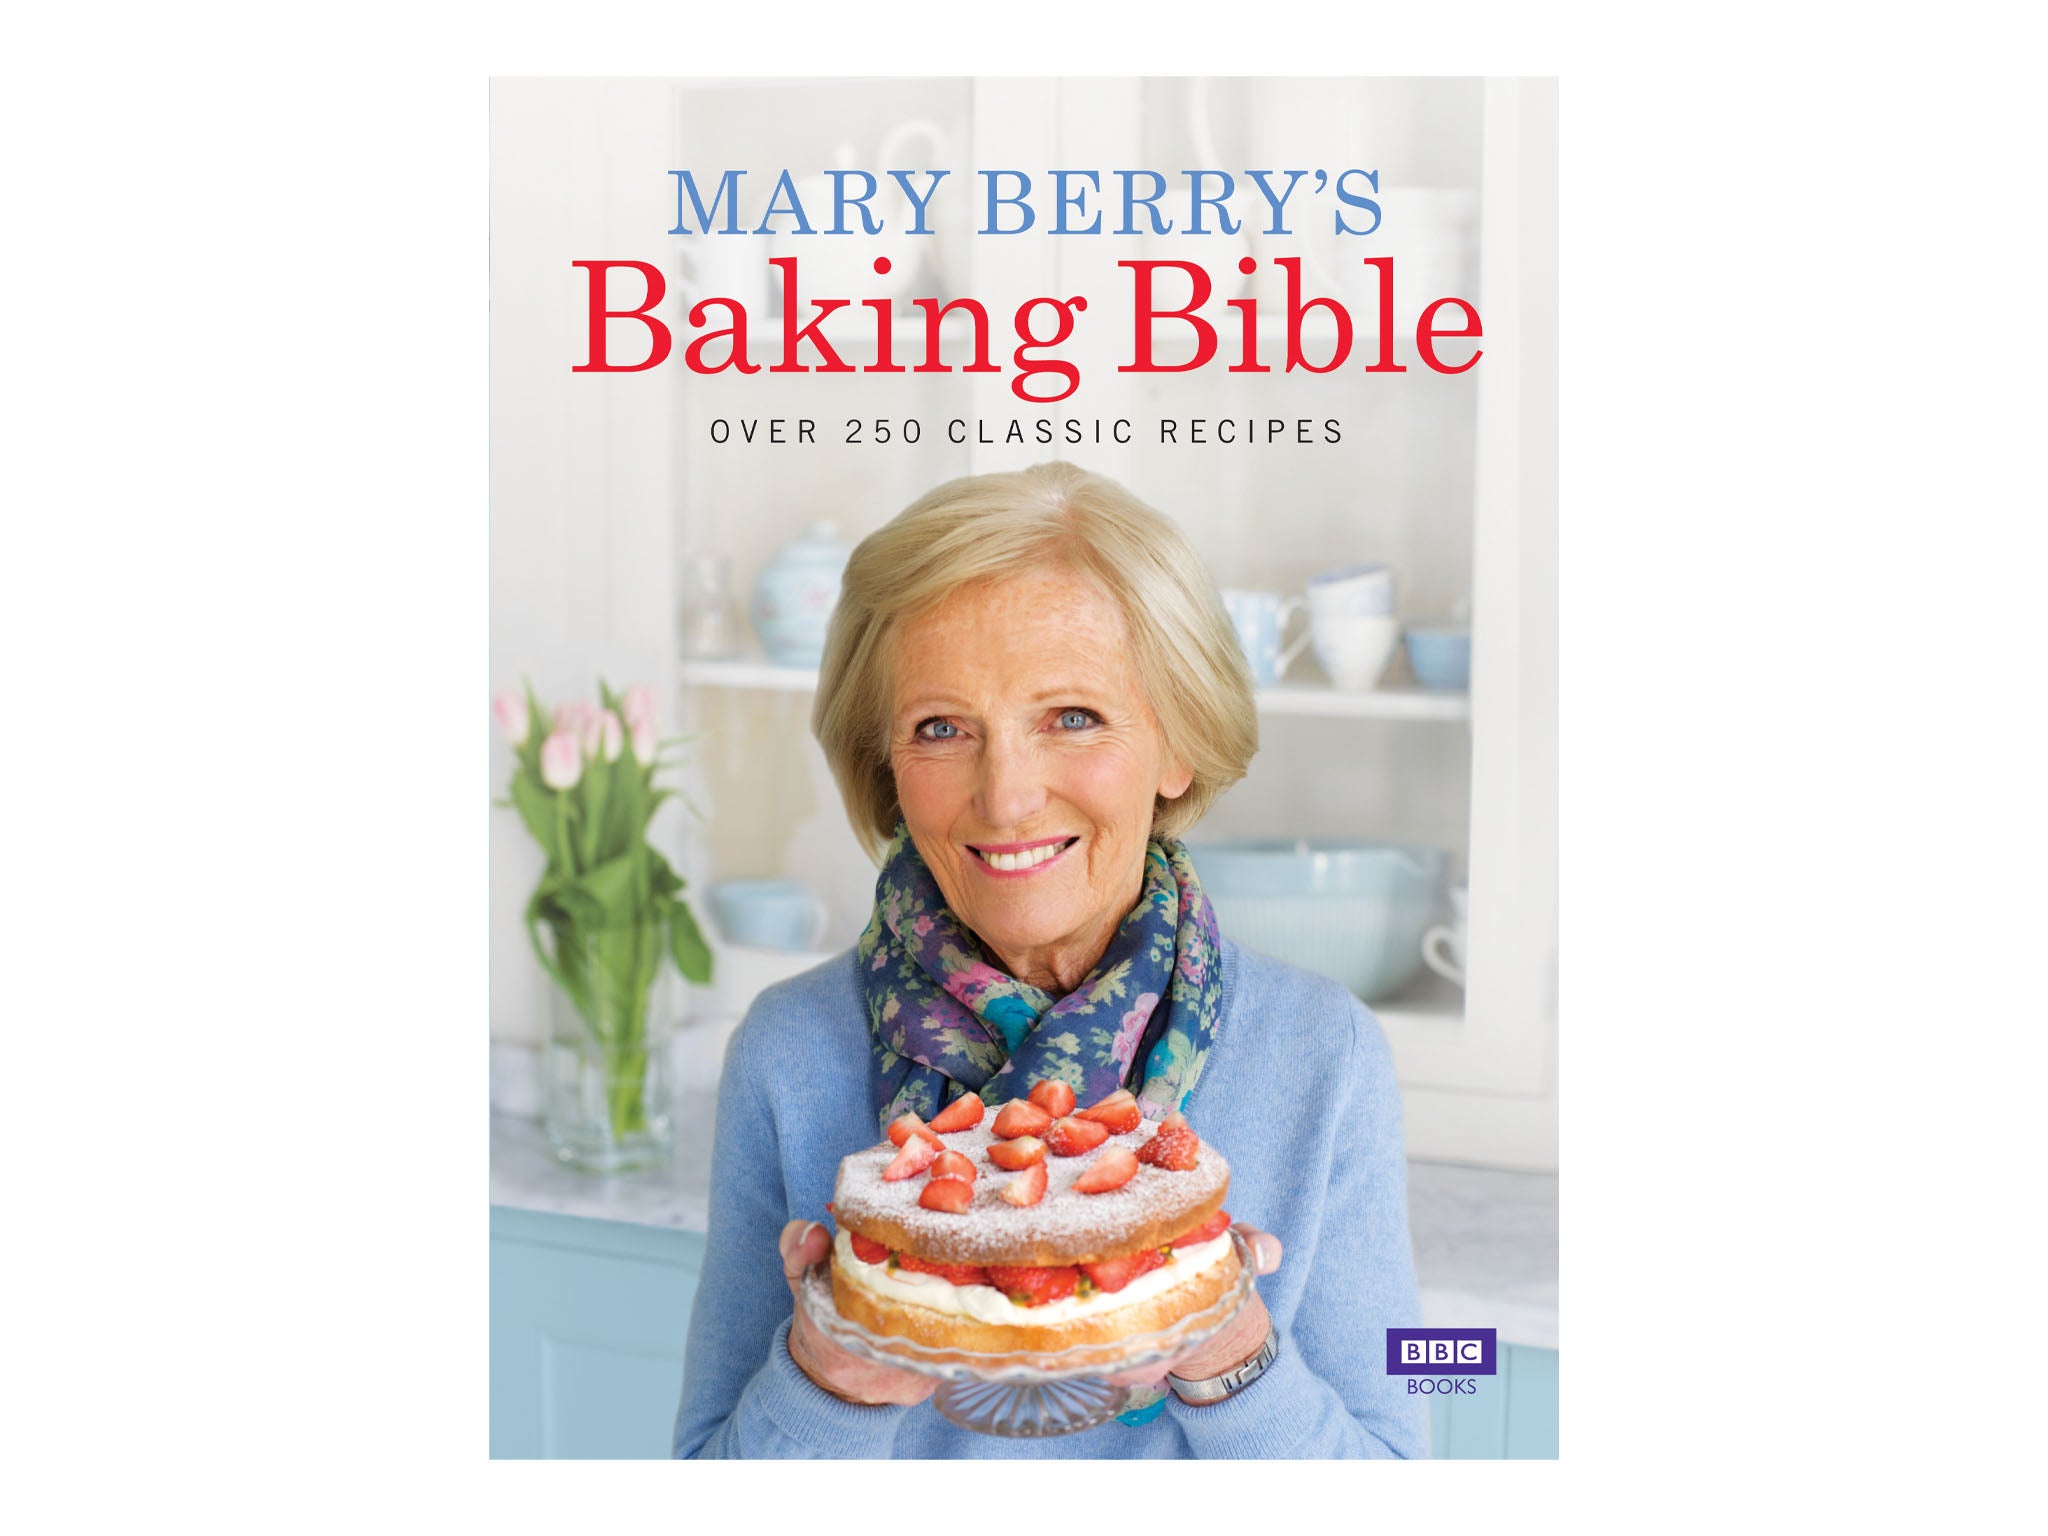 Mary Berry's easy cake recipes - BBC Food